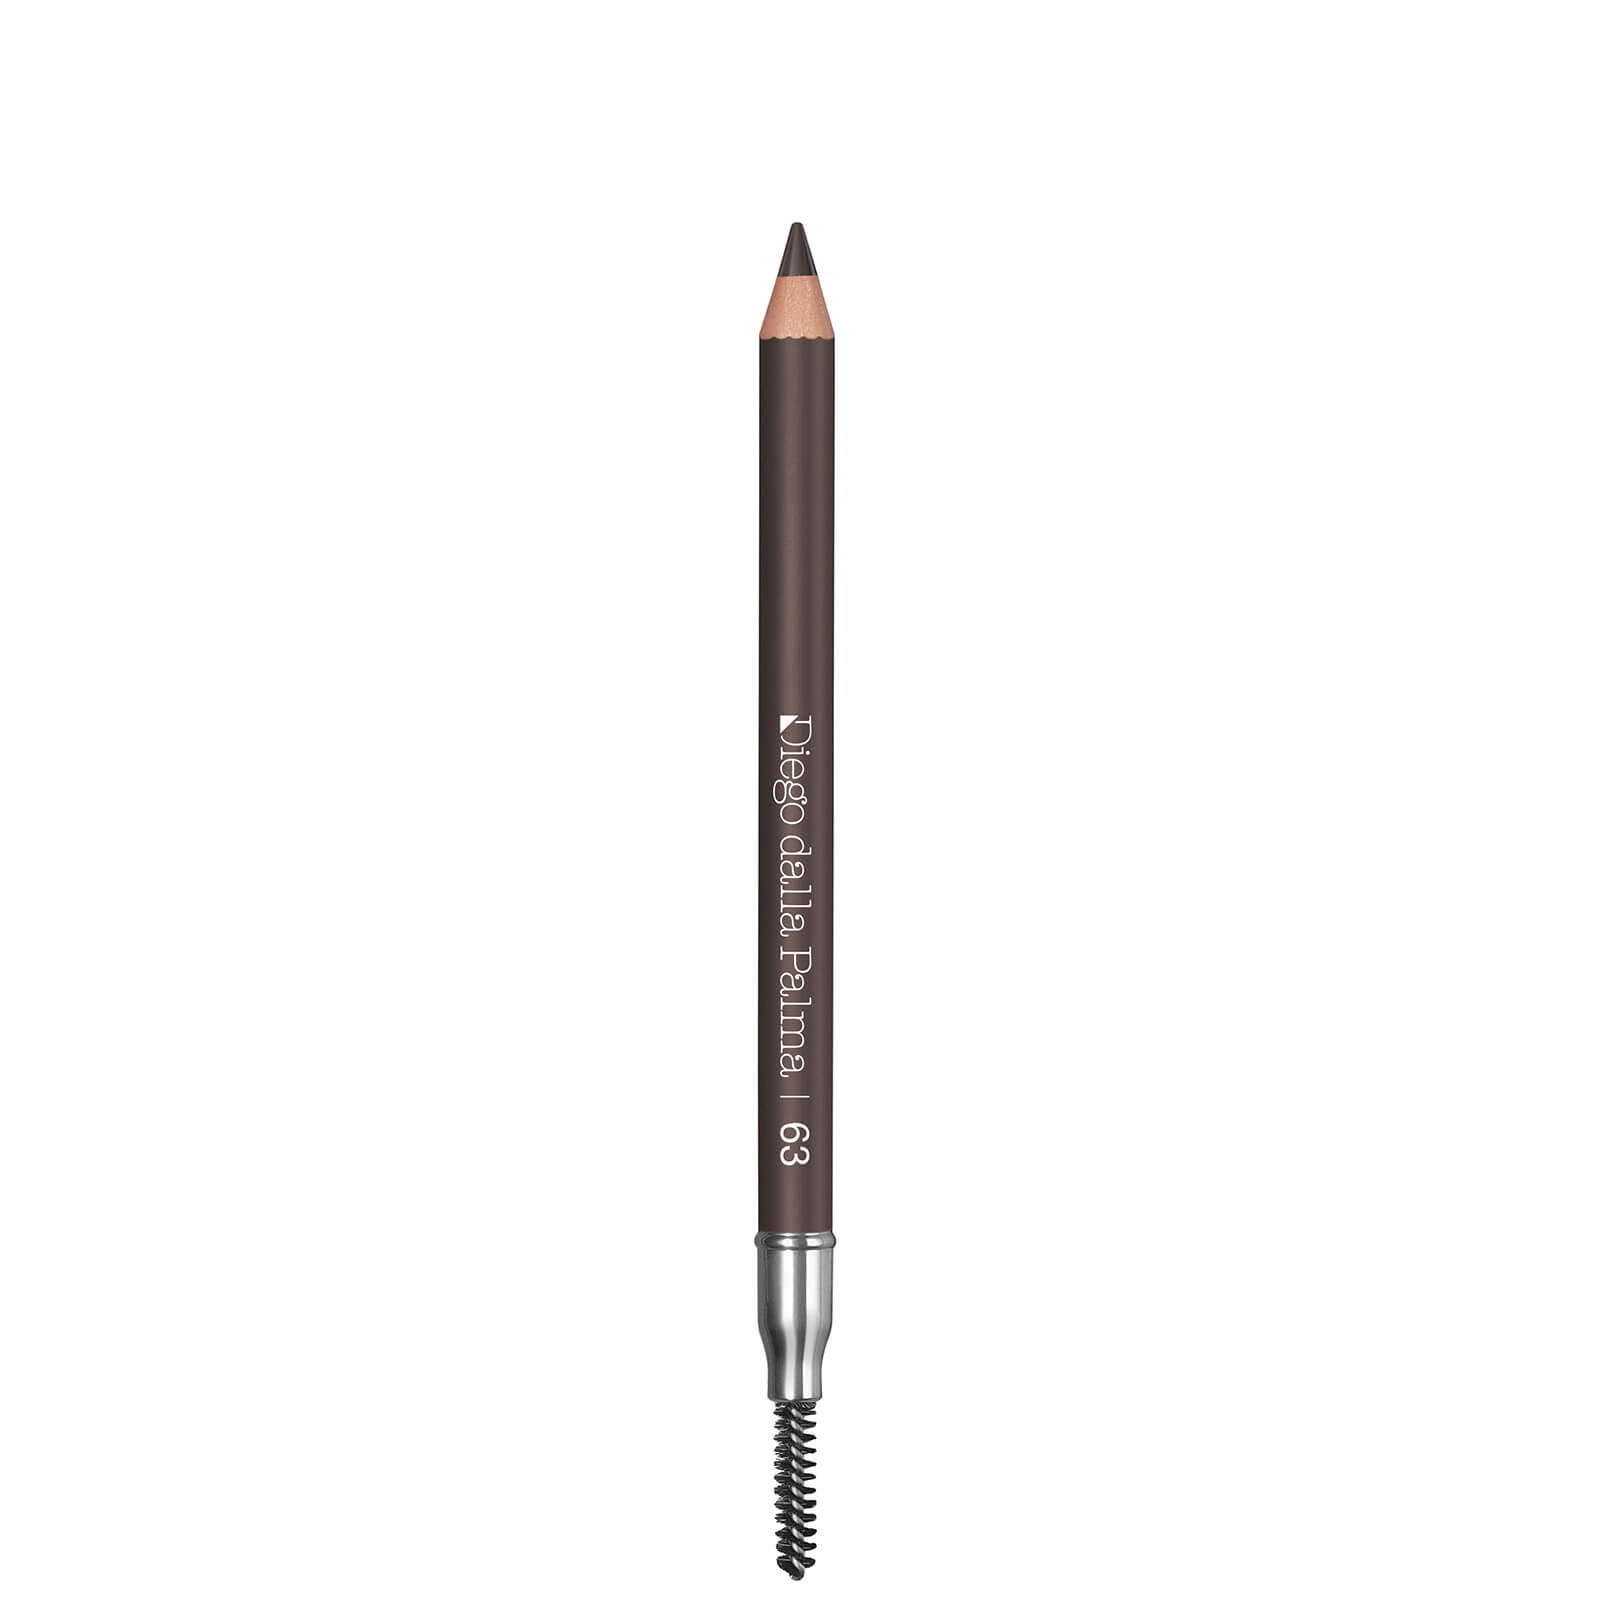 Diego Dalla Palma Eyebrow Powder Pencil (Various Shades) - Ash Brown